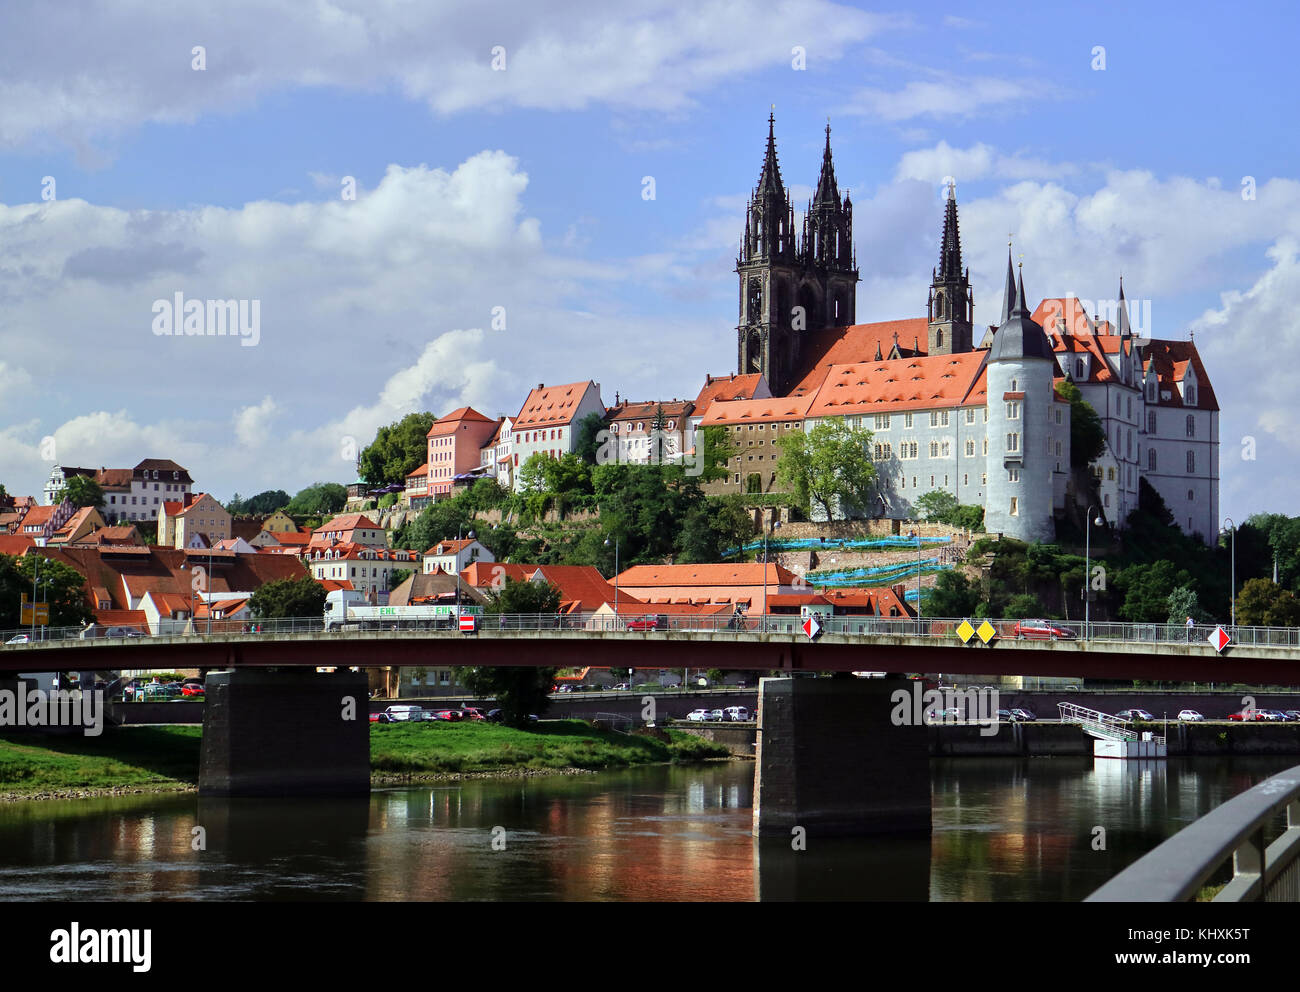 Europa, Deutschland, Sachsen, Meißen, Blick auf die Brücke über die Elbe; Schloss Albrechtsburg, der Albrechtsburg ist eine spätgotische Burg, die der Stadt Meißen in Sachsen dominiert. Es steht auf einem Hügel über dem Fluss Elbe. Stockfoto